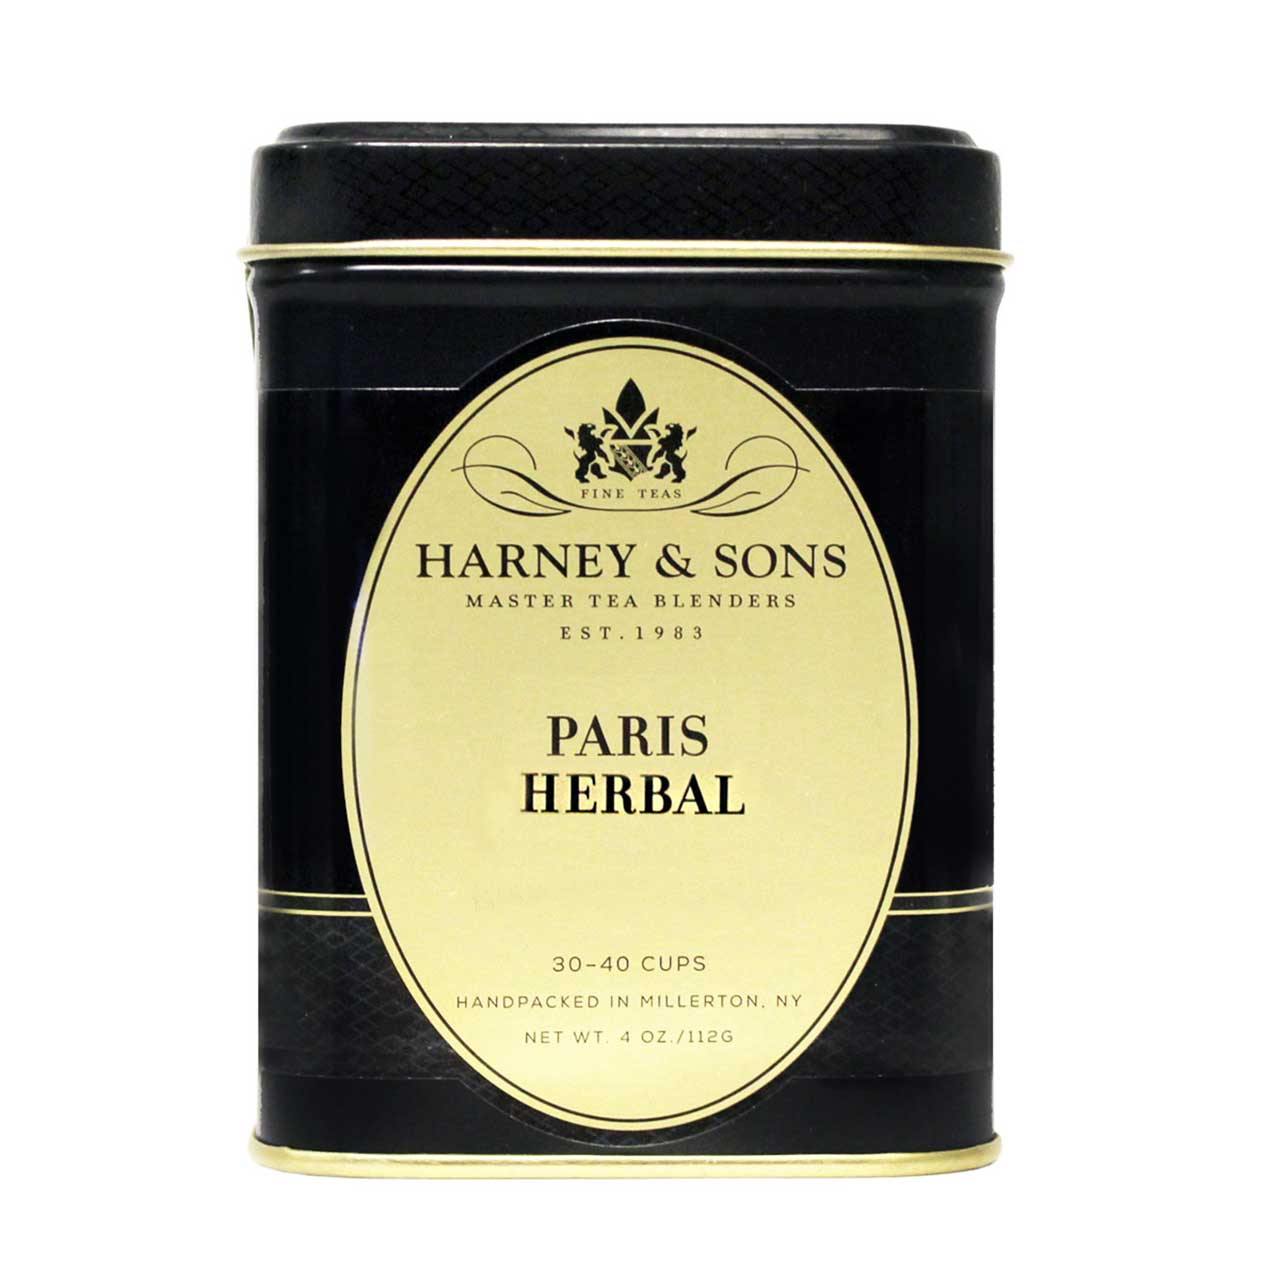 Harney & Sons Paris Herbal Loose Tea 4 oz (Rooibos)